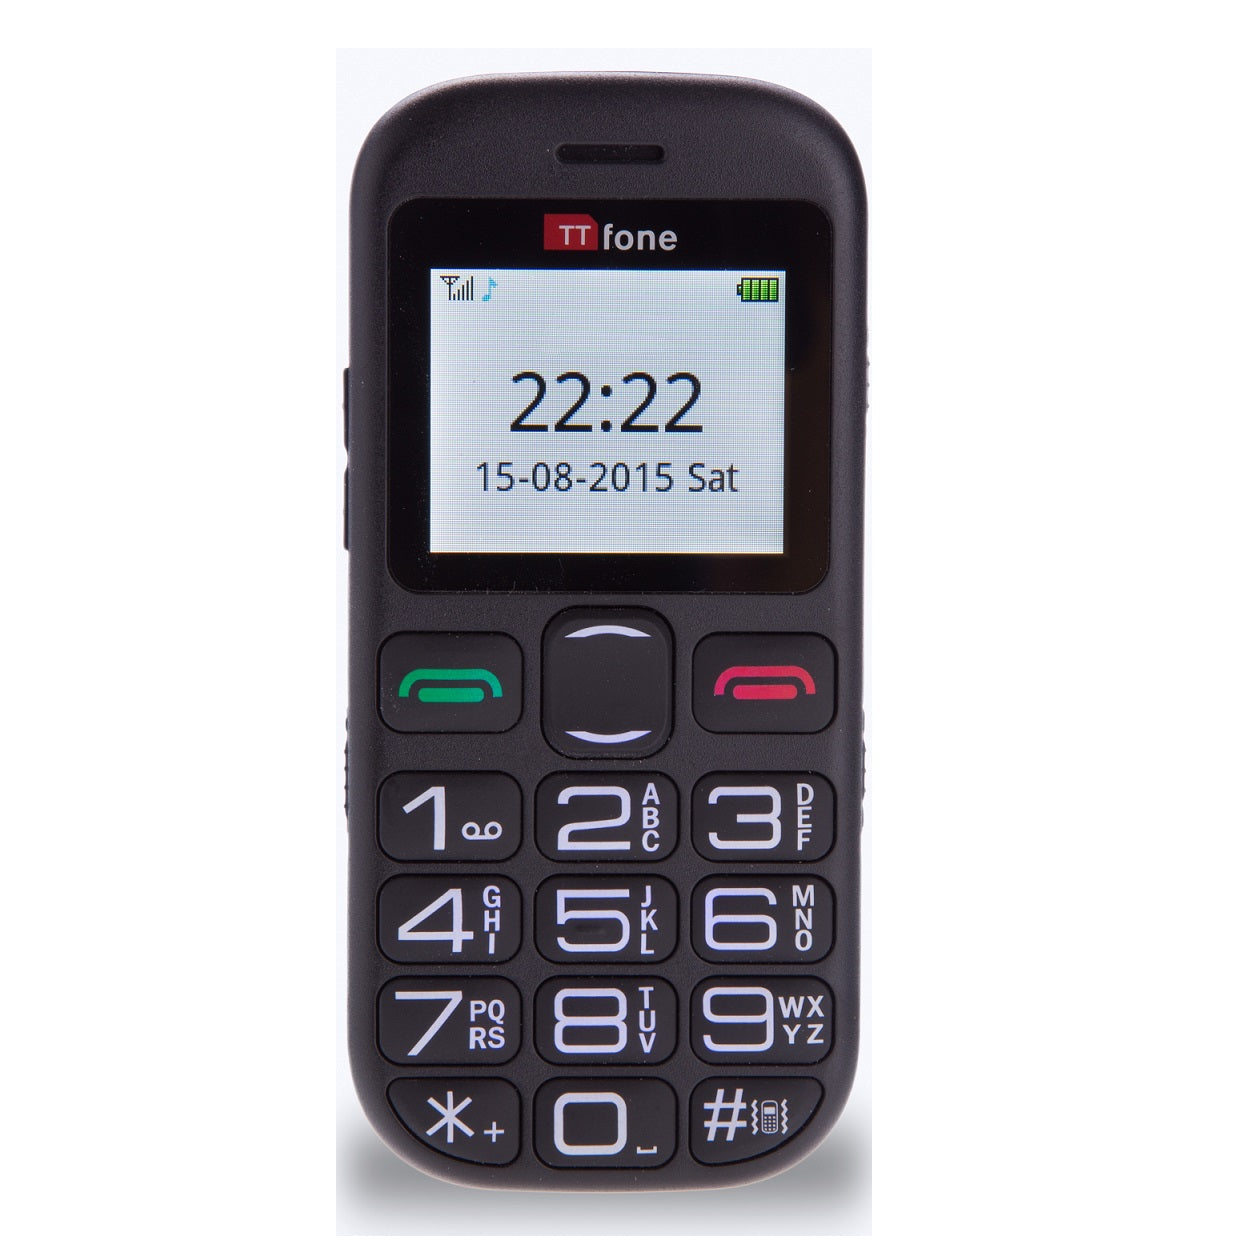 TTfone Jupiter 2 TT850 easy to use mobile